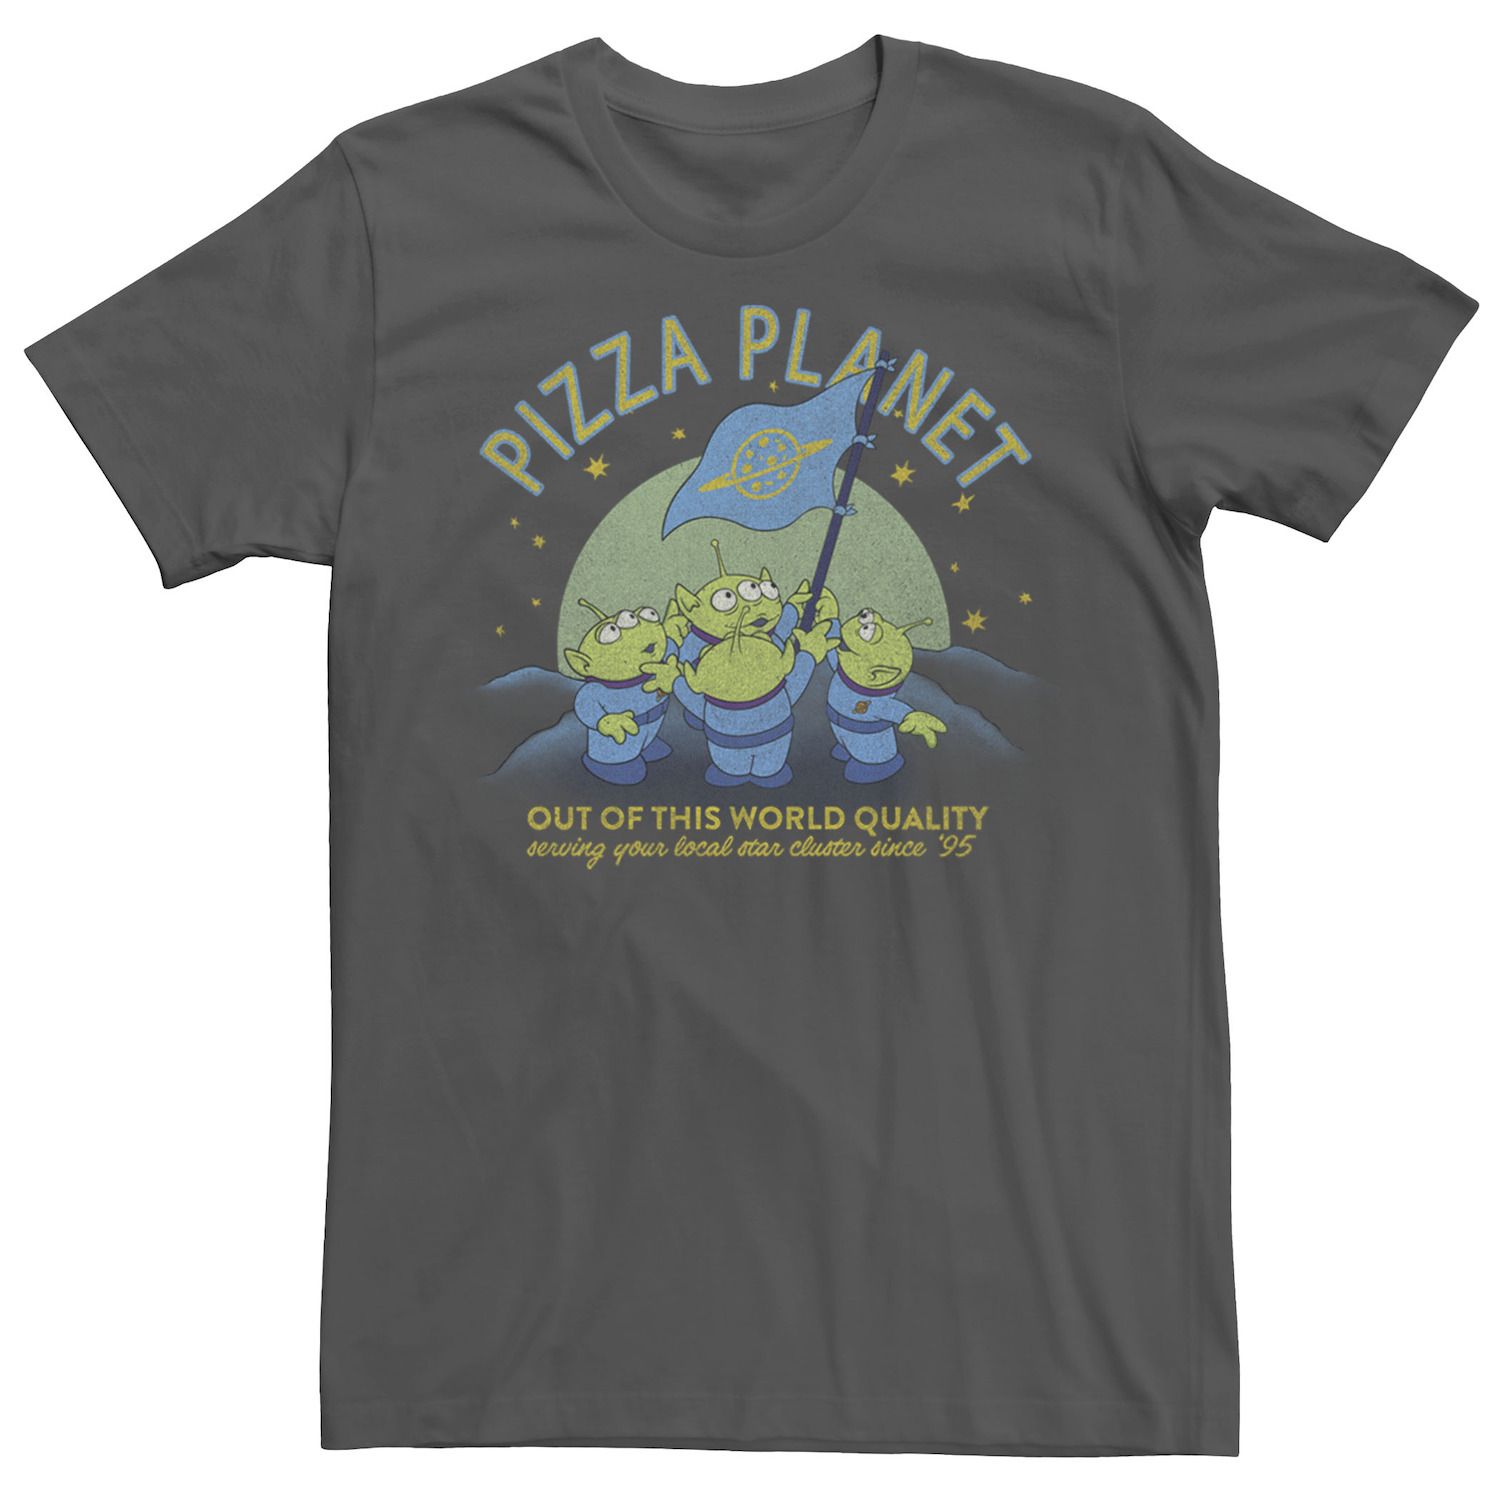 Мужская футболка с флагом «История игрушек Пицца Планета игрушек» Disney / Pixar женская футболка планета пицца l черный